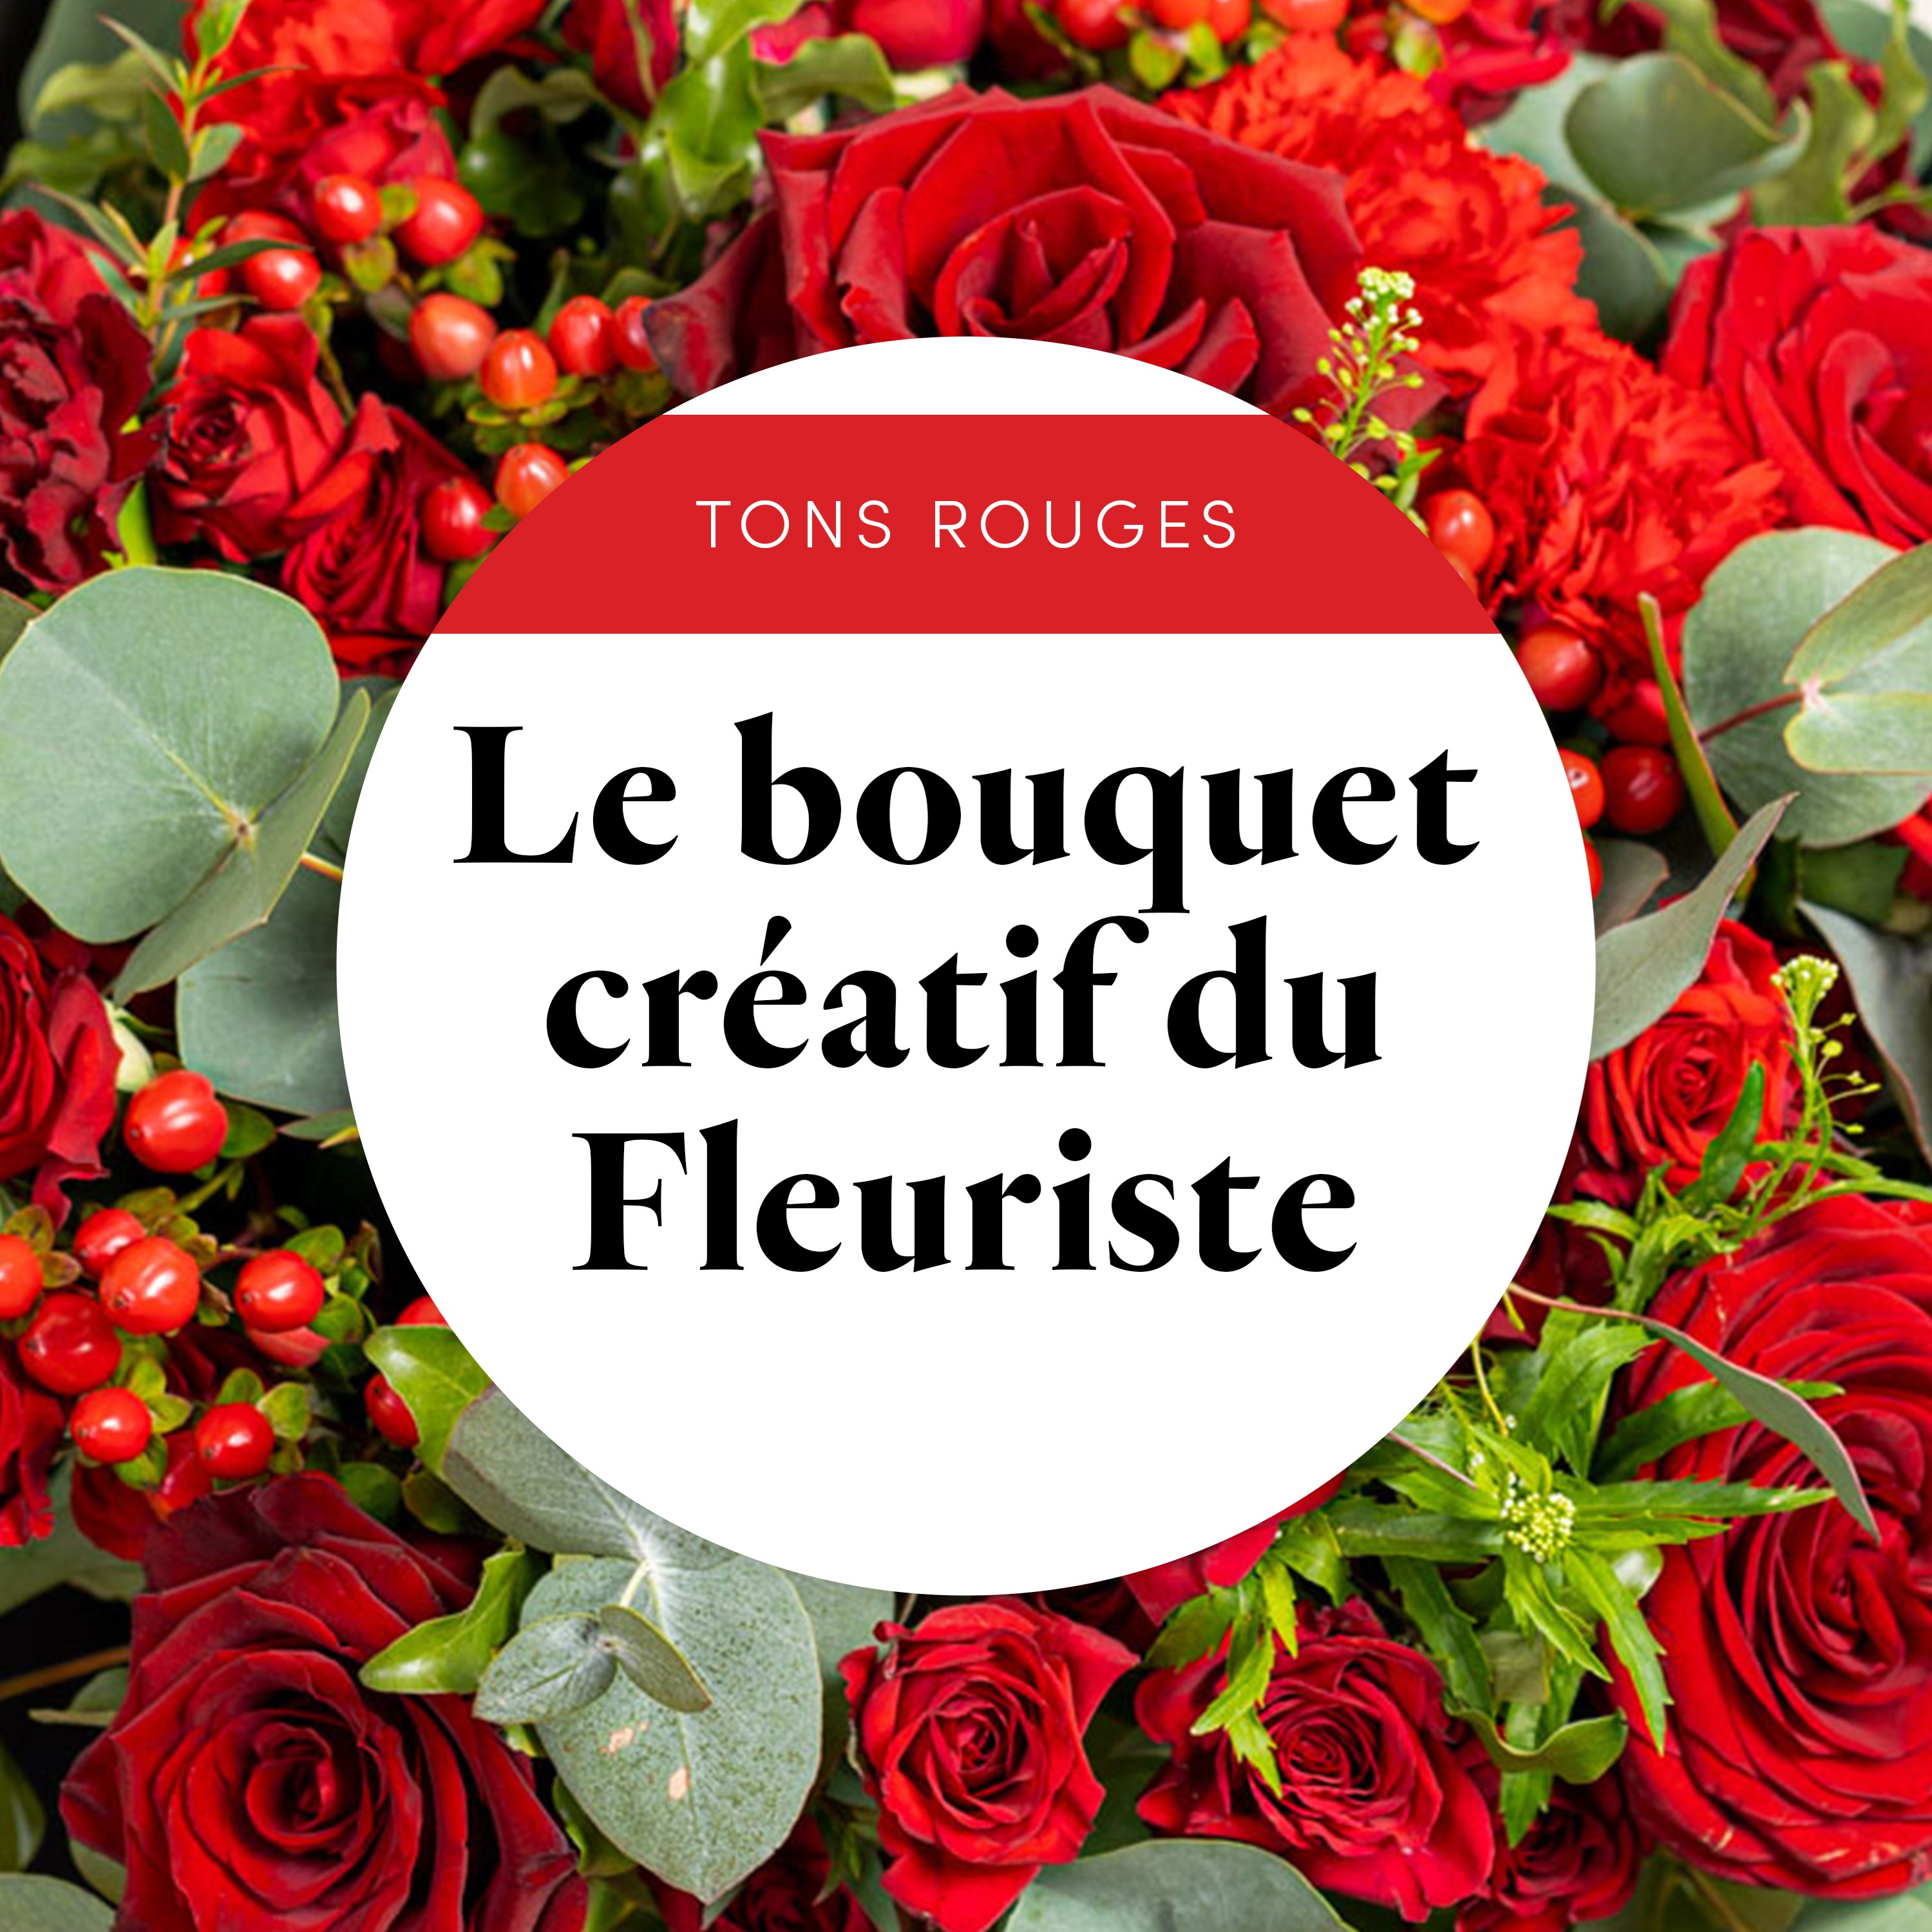 Bouquet du fleuriste Rouge